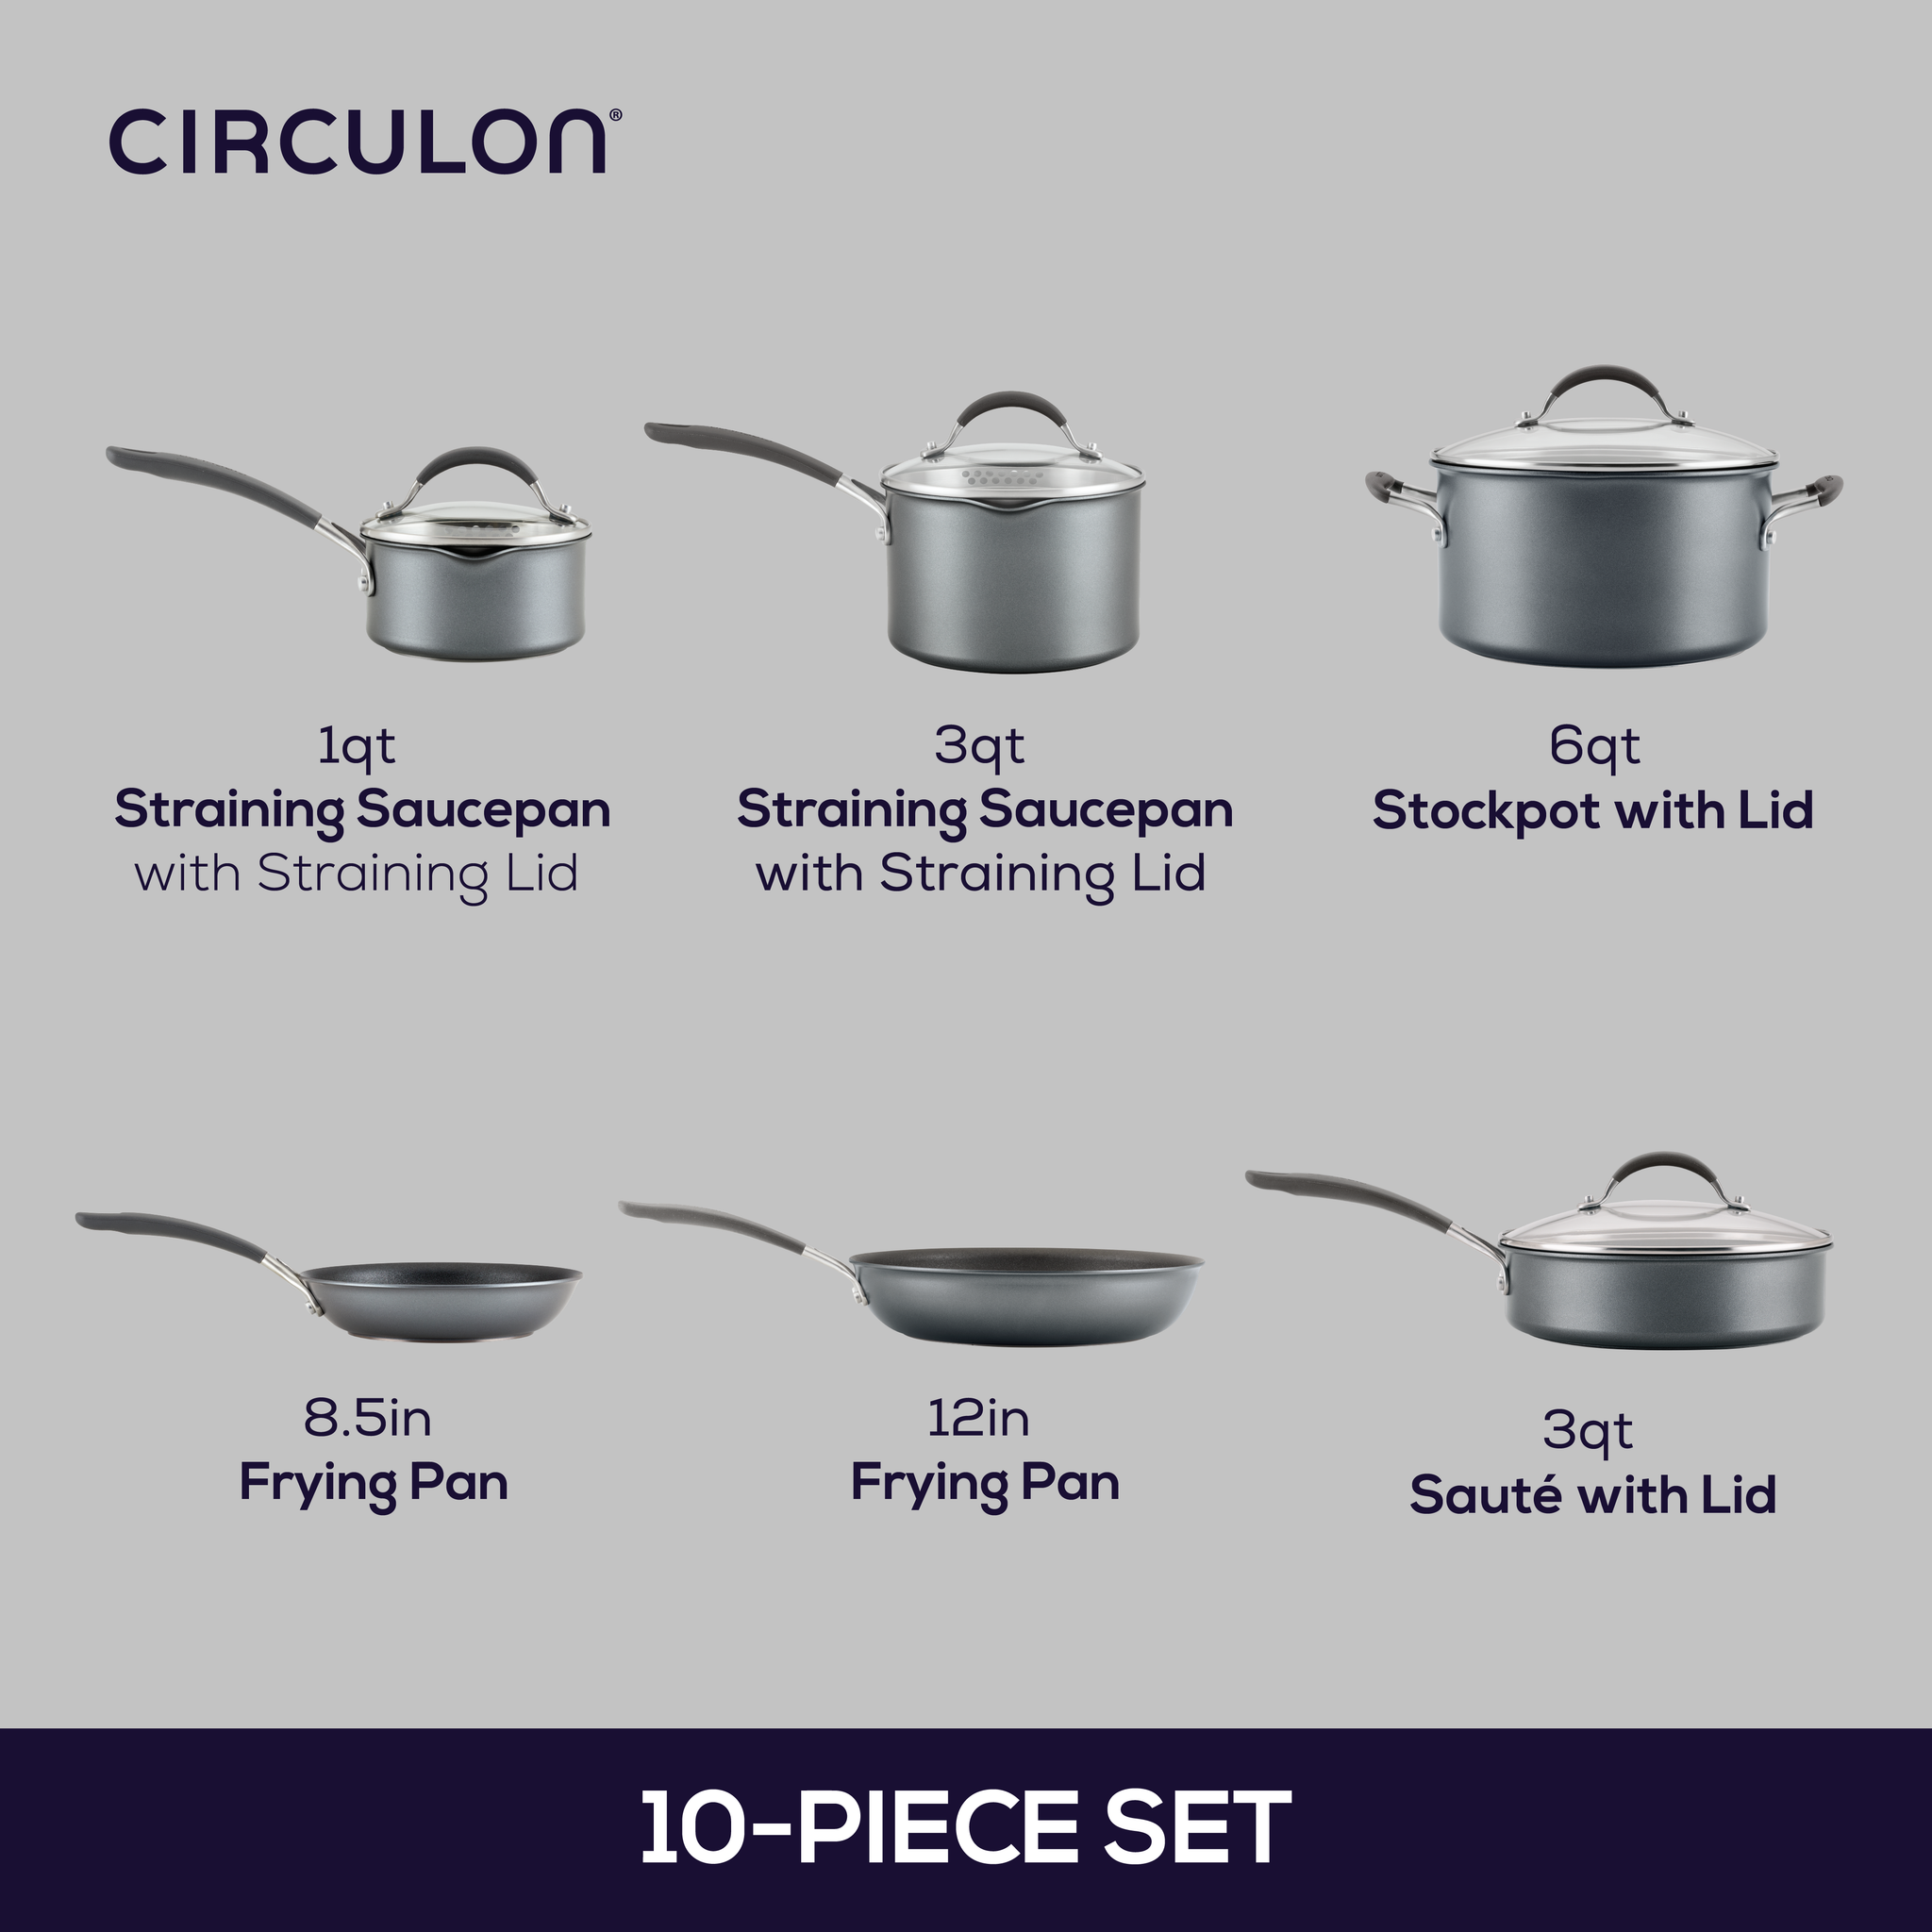 – ScratchDefense Circulon Cookware Set Nonstick 10-Piece